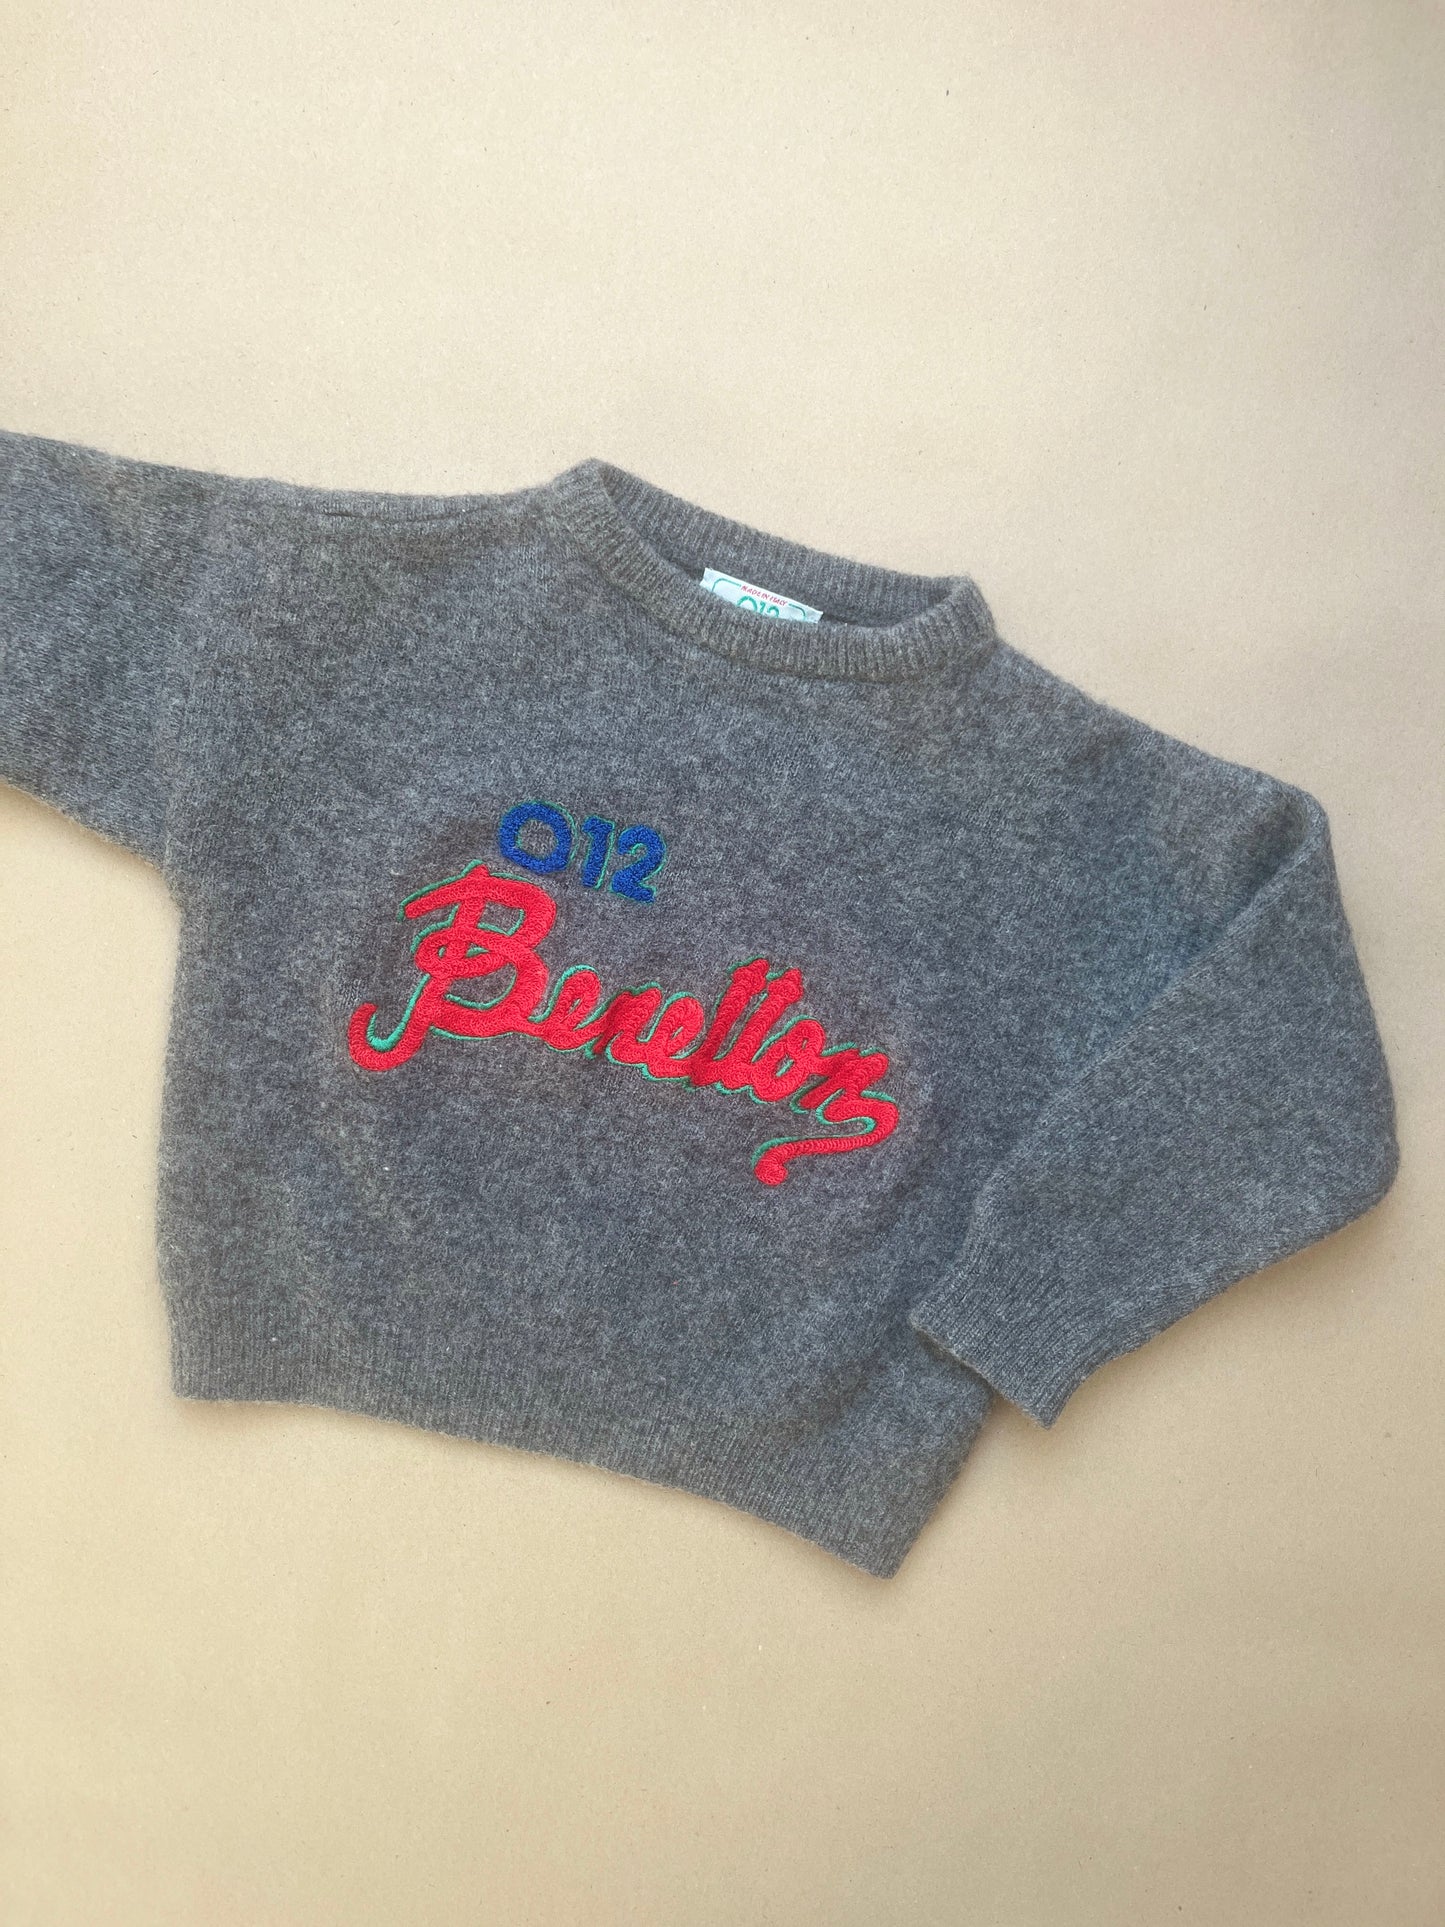 Wool sweater, 98/104